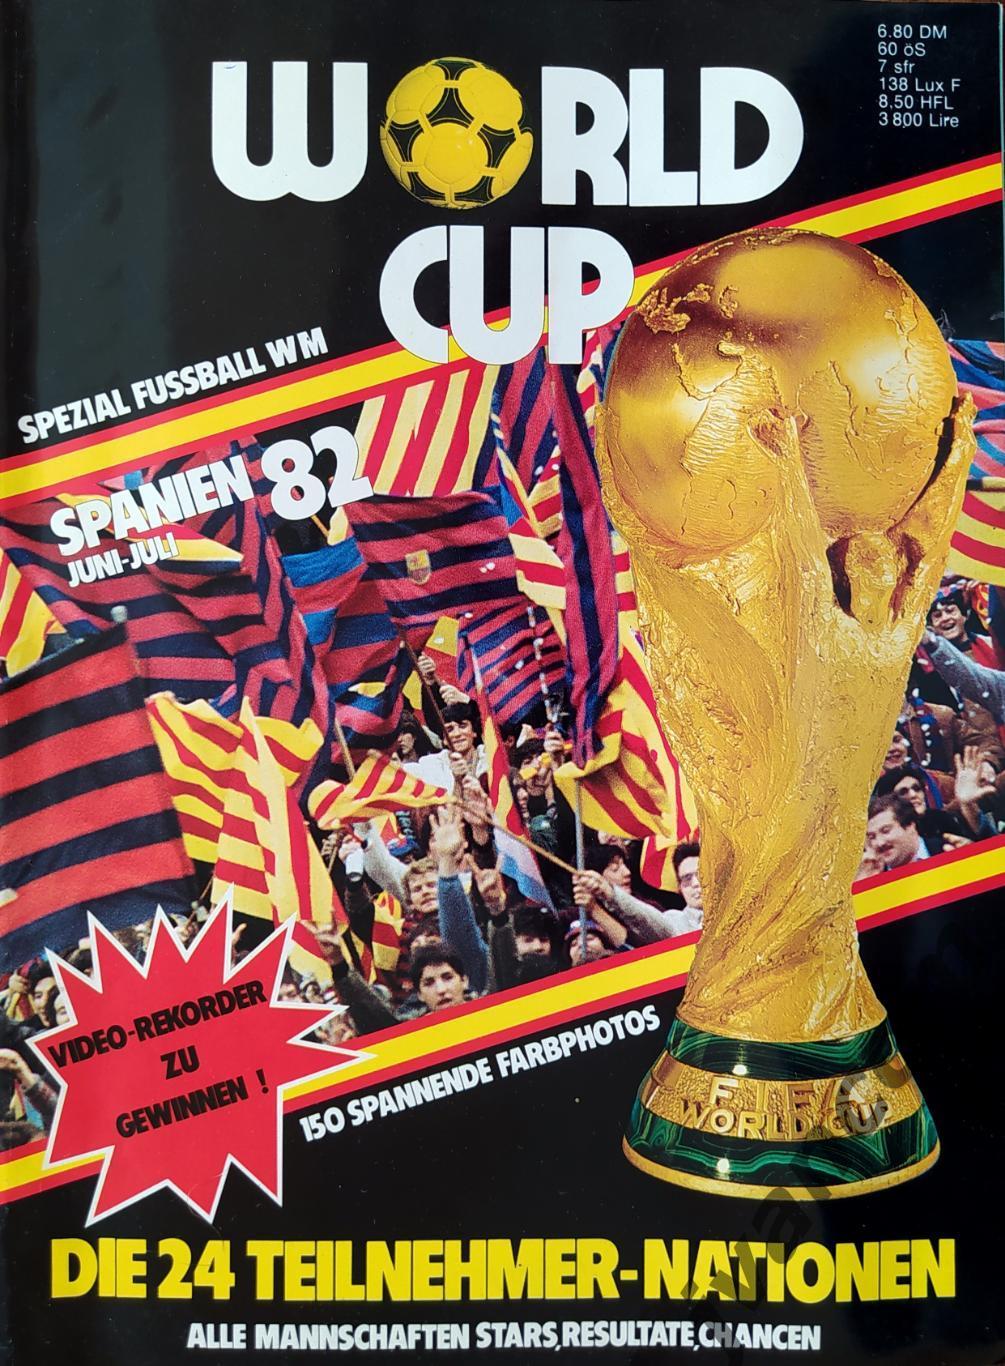 World Cup Spanien-82 / Чемпионат Мира по футболу*82 в Испании. Превью команд.